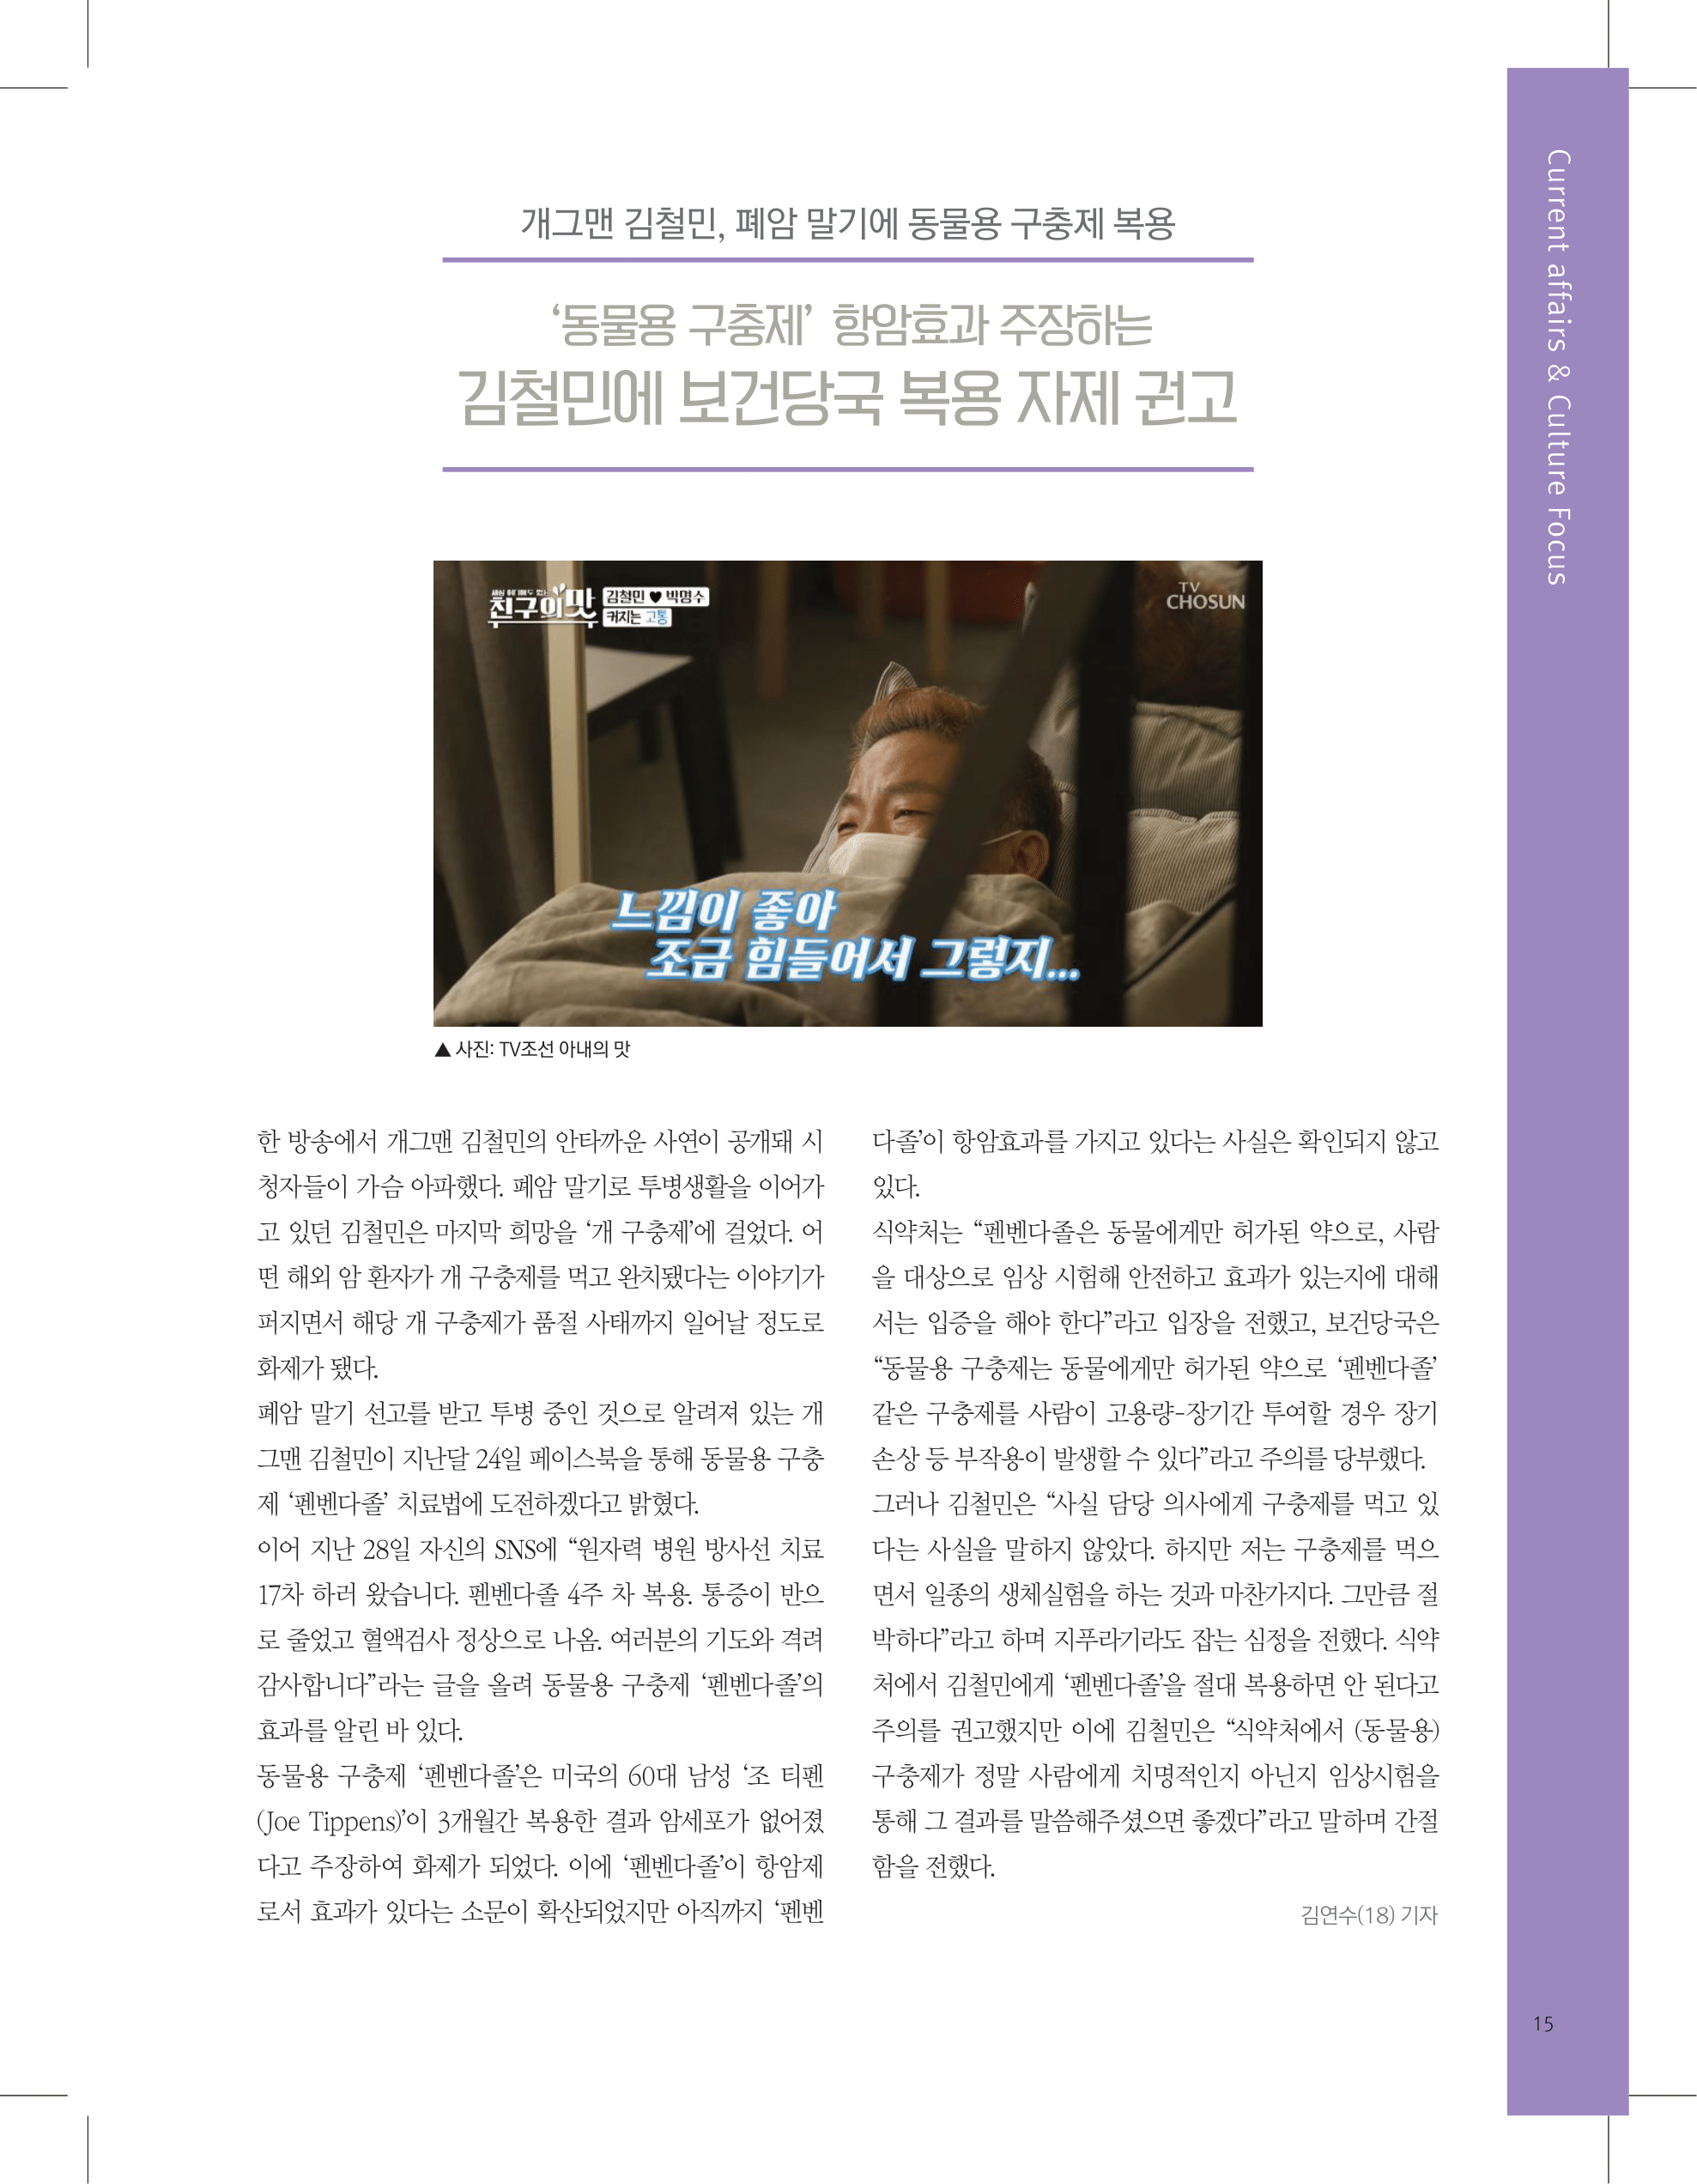 뜻새김 신문 74호 15